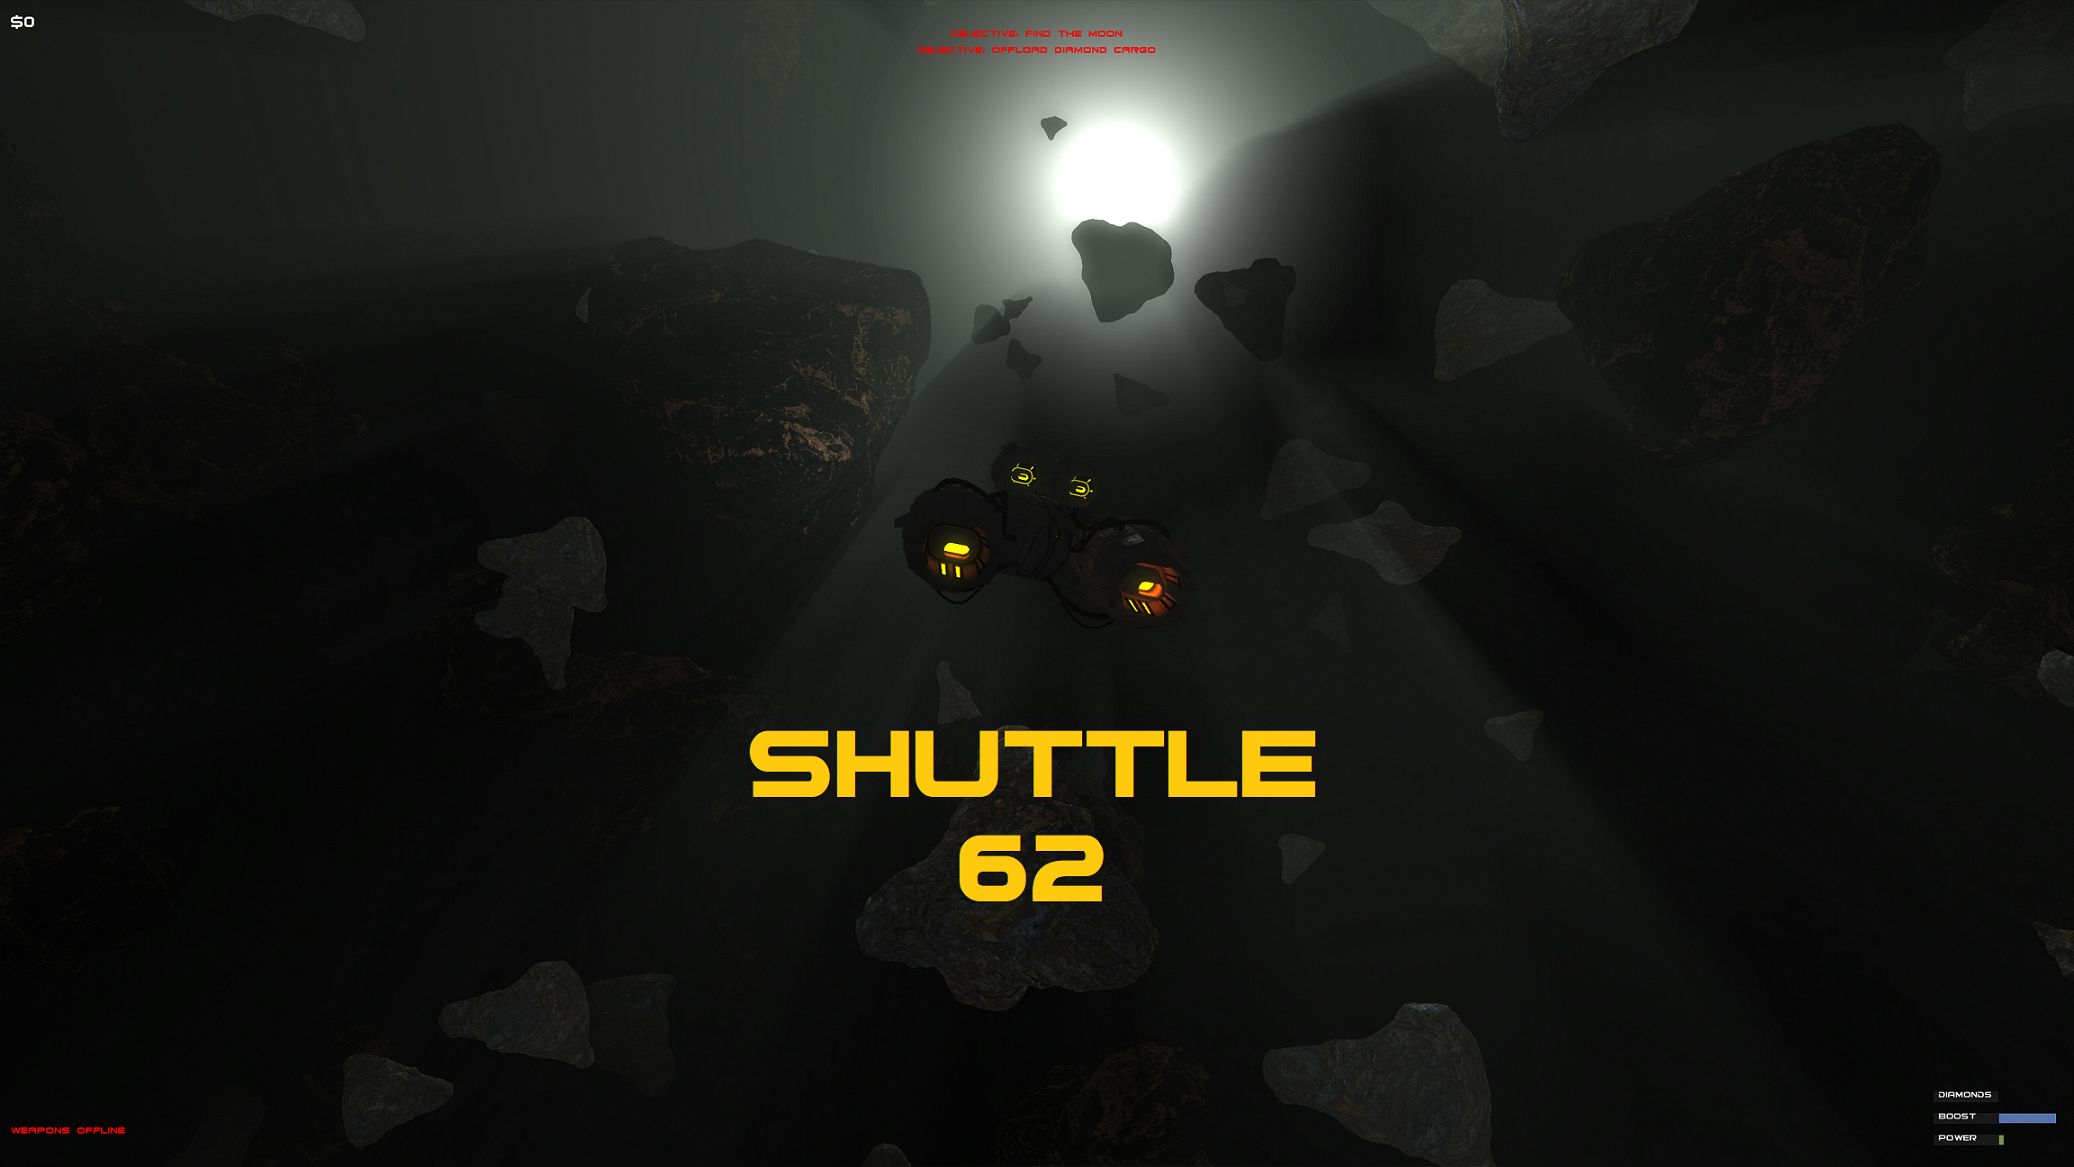 Shuttle 62